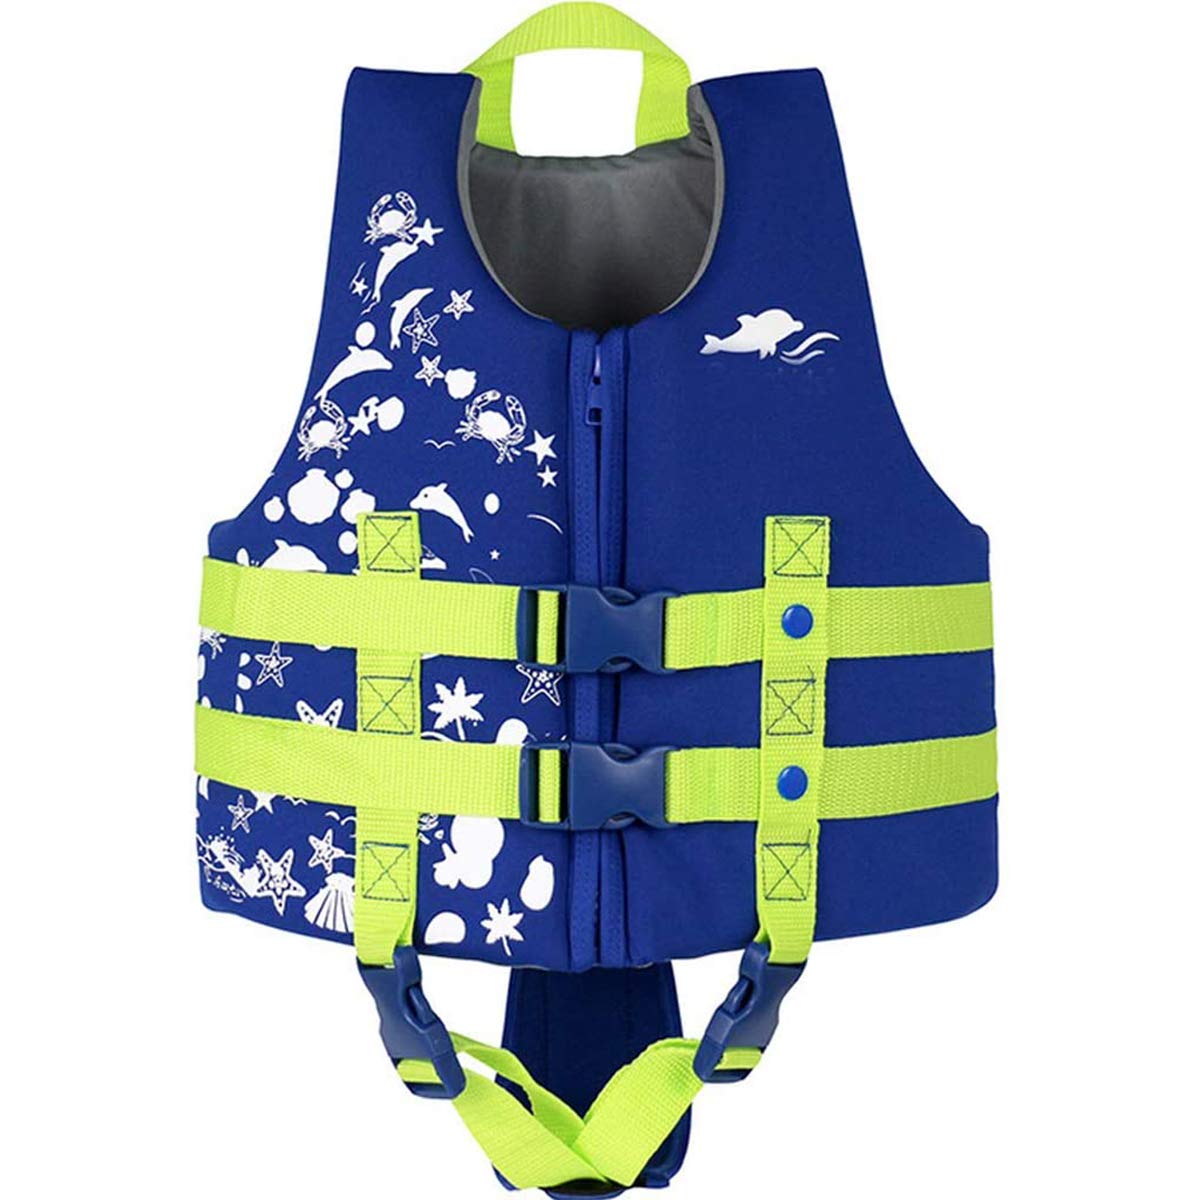 Schwimmanzug Badebekleidung für Kinder Schwimmjacke mit verstellbarem Sicherheitsgurt für Unisex-Kinder, L,Blau(6-9 Jahre/30-35KG)